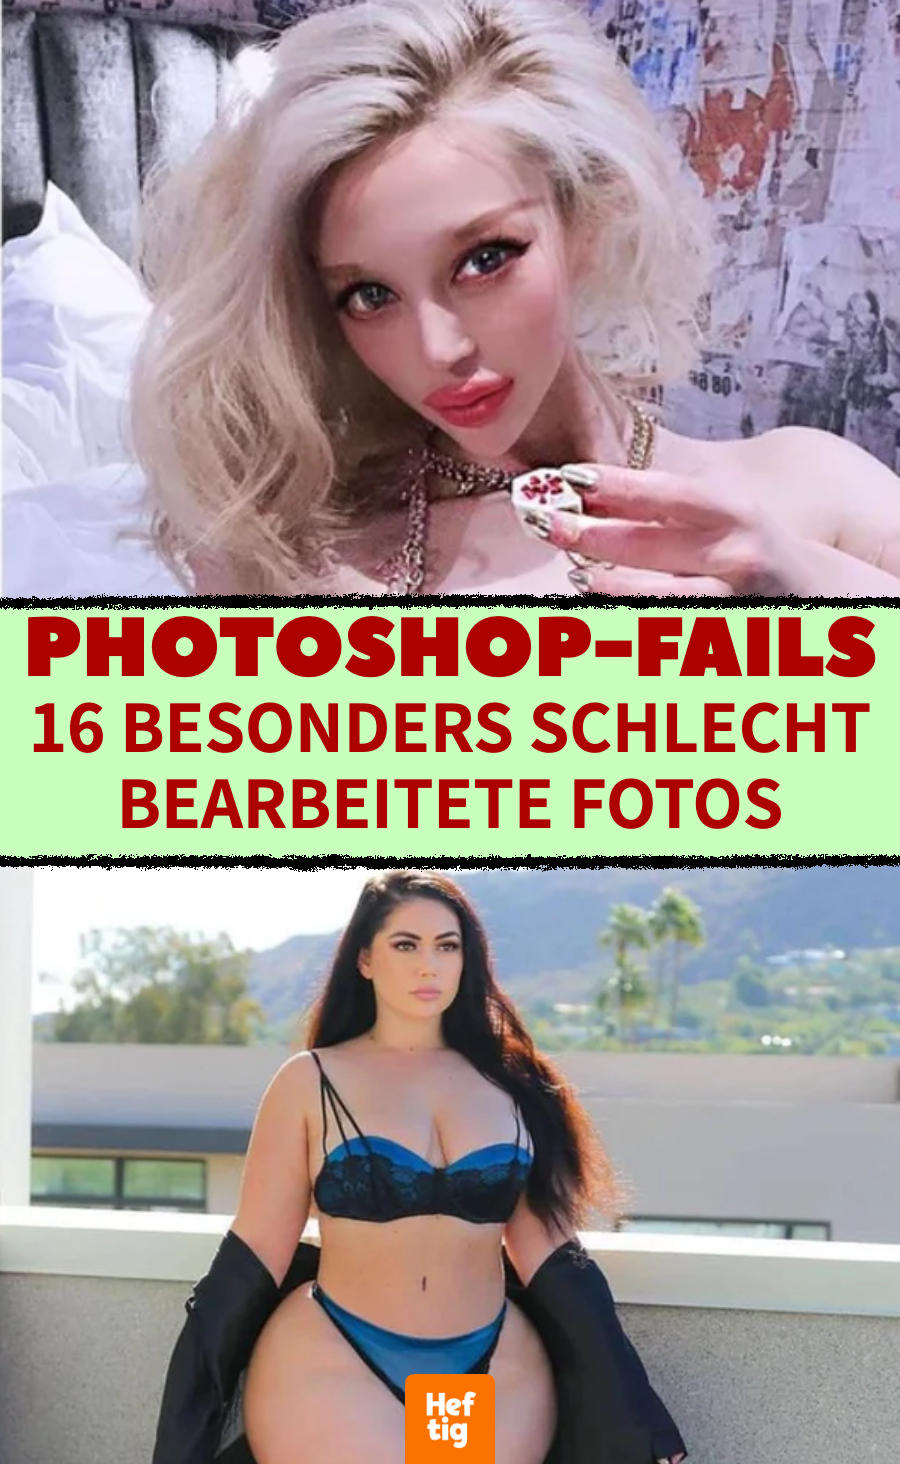 Photoshop-Fails: 15 besonders schlecht bearbeitete Fotos